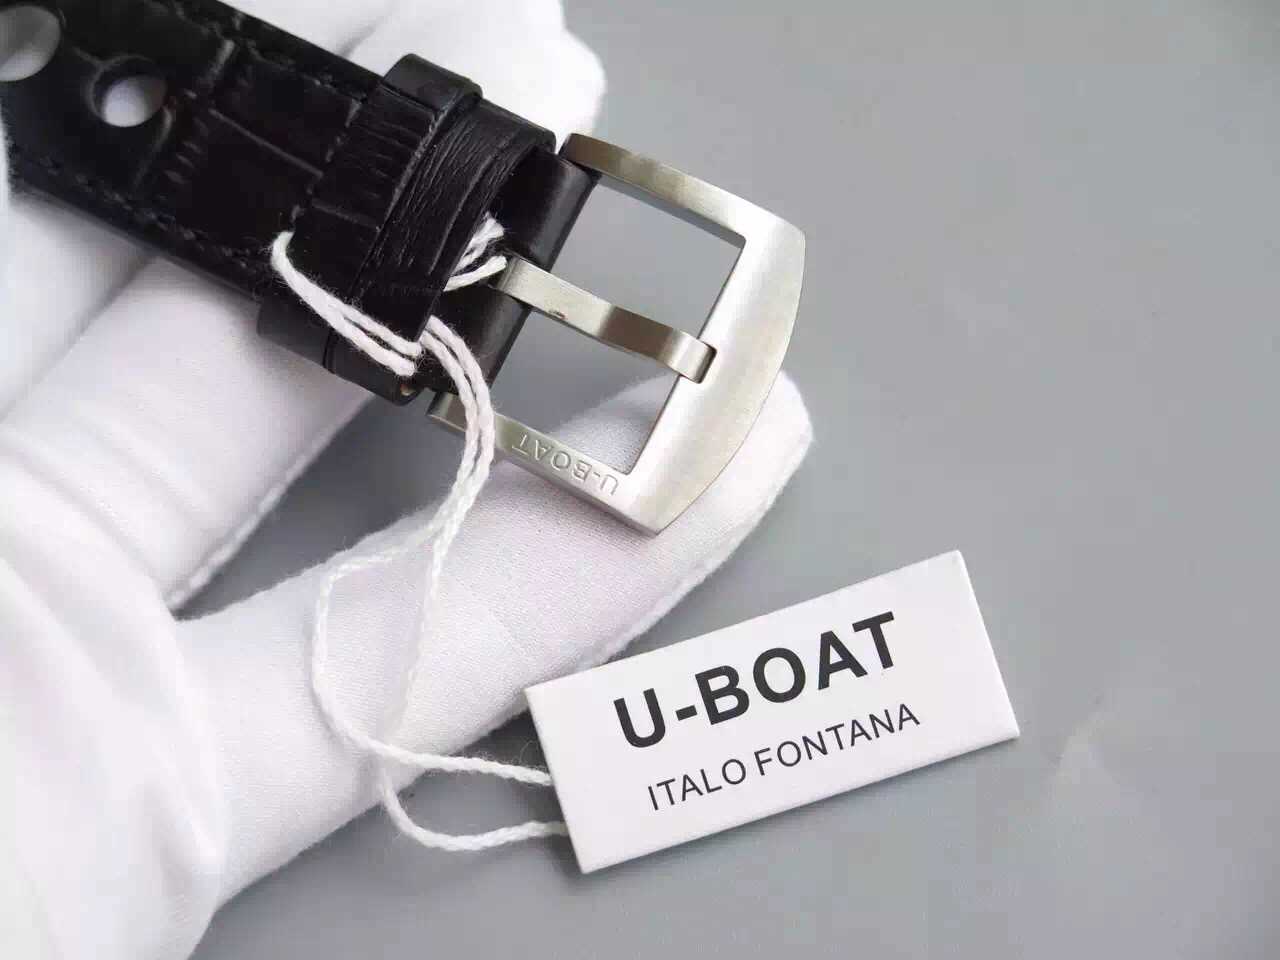 2022122415244979 - 優寶H意大利軍工品牌UBOAT機械手錶￥3100